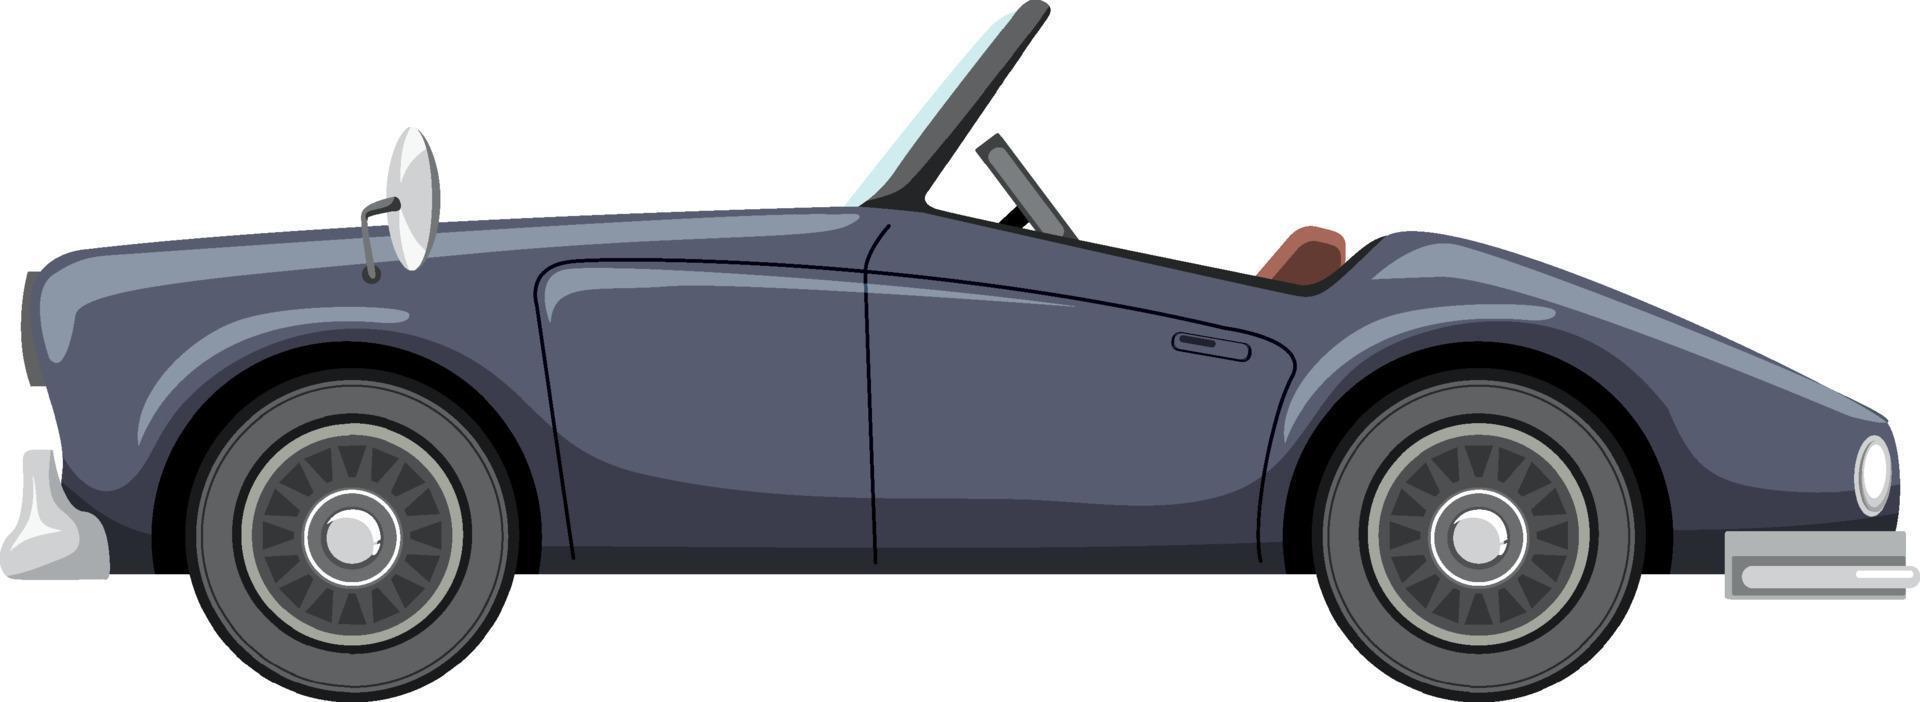 voiture grise classique en style cartoon vecteur